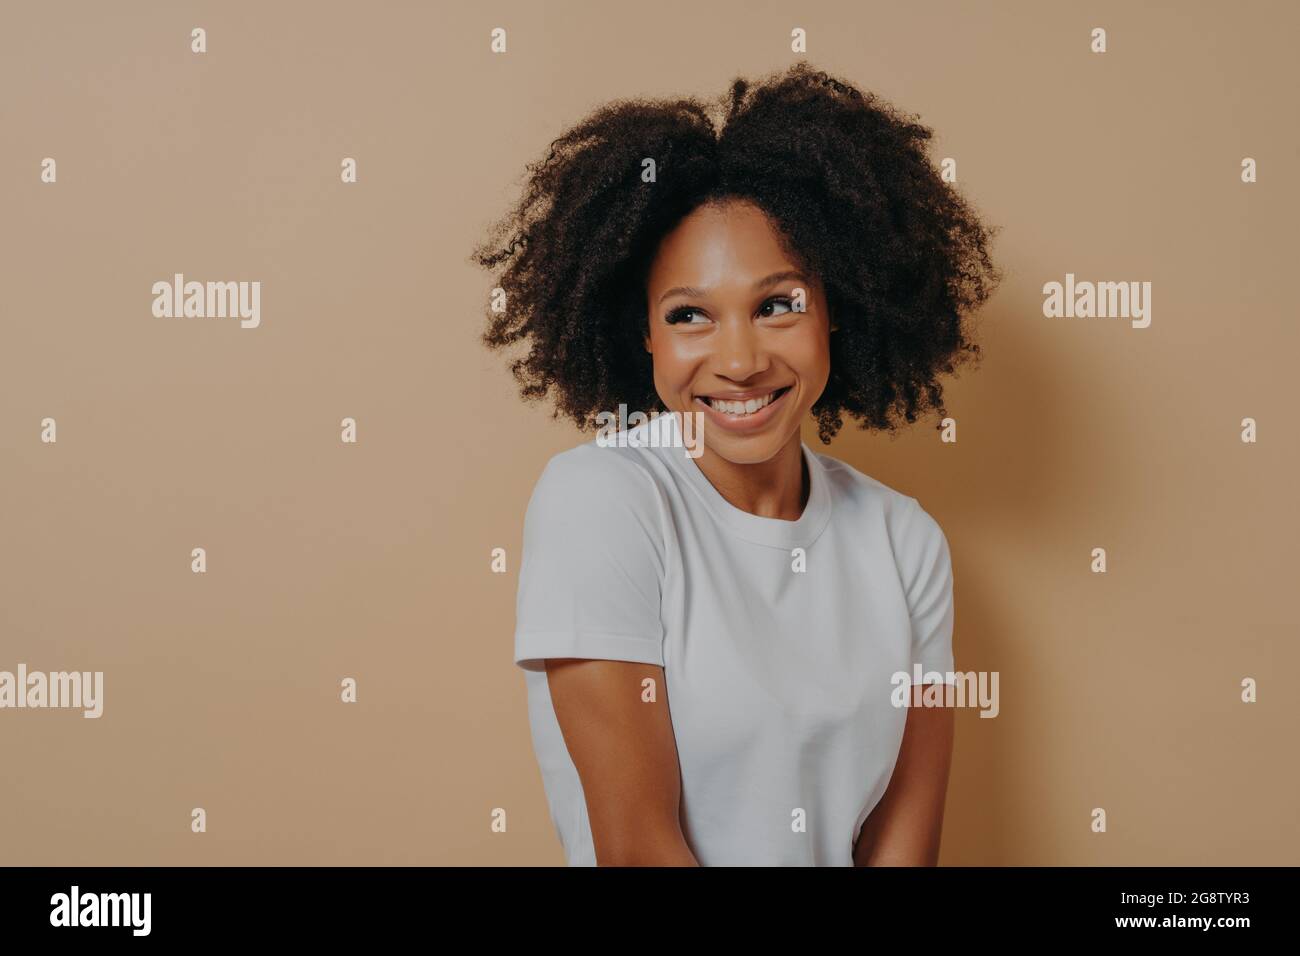 Niedliche afrikanische Frau mit toothy Lächeln Blick beiseite mit Schüchternheit, isoliert auf beigefarbenem Hintergrund Stockfoto